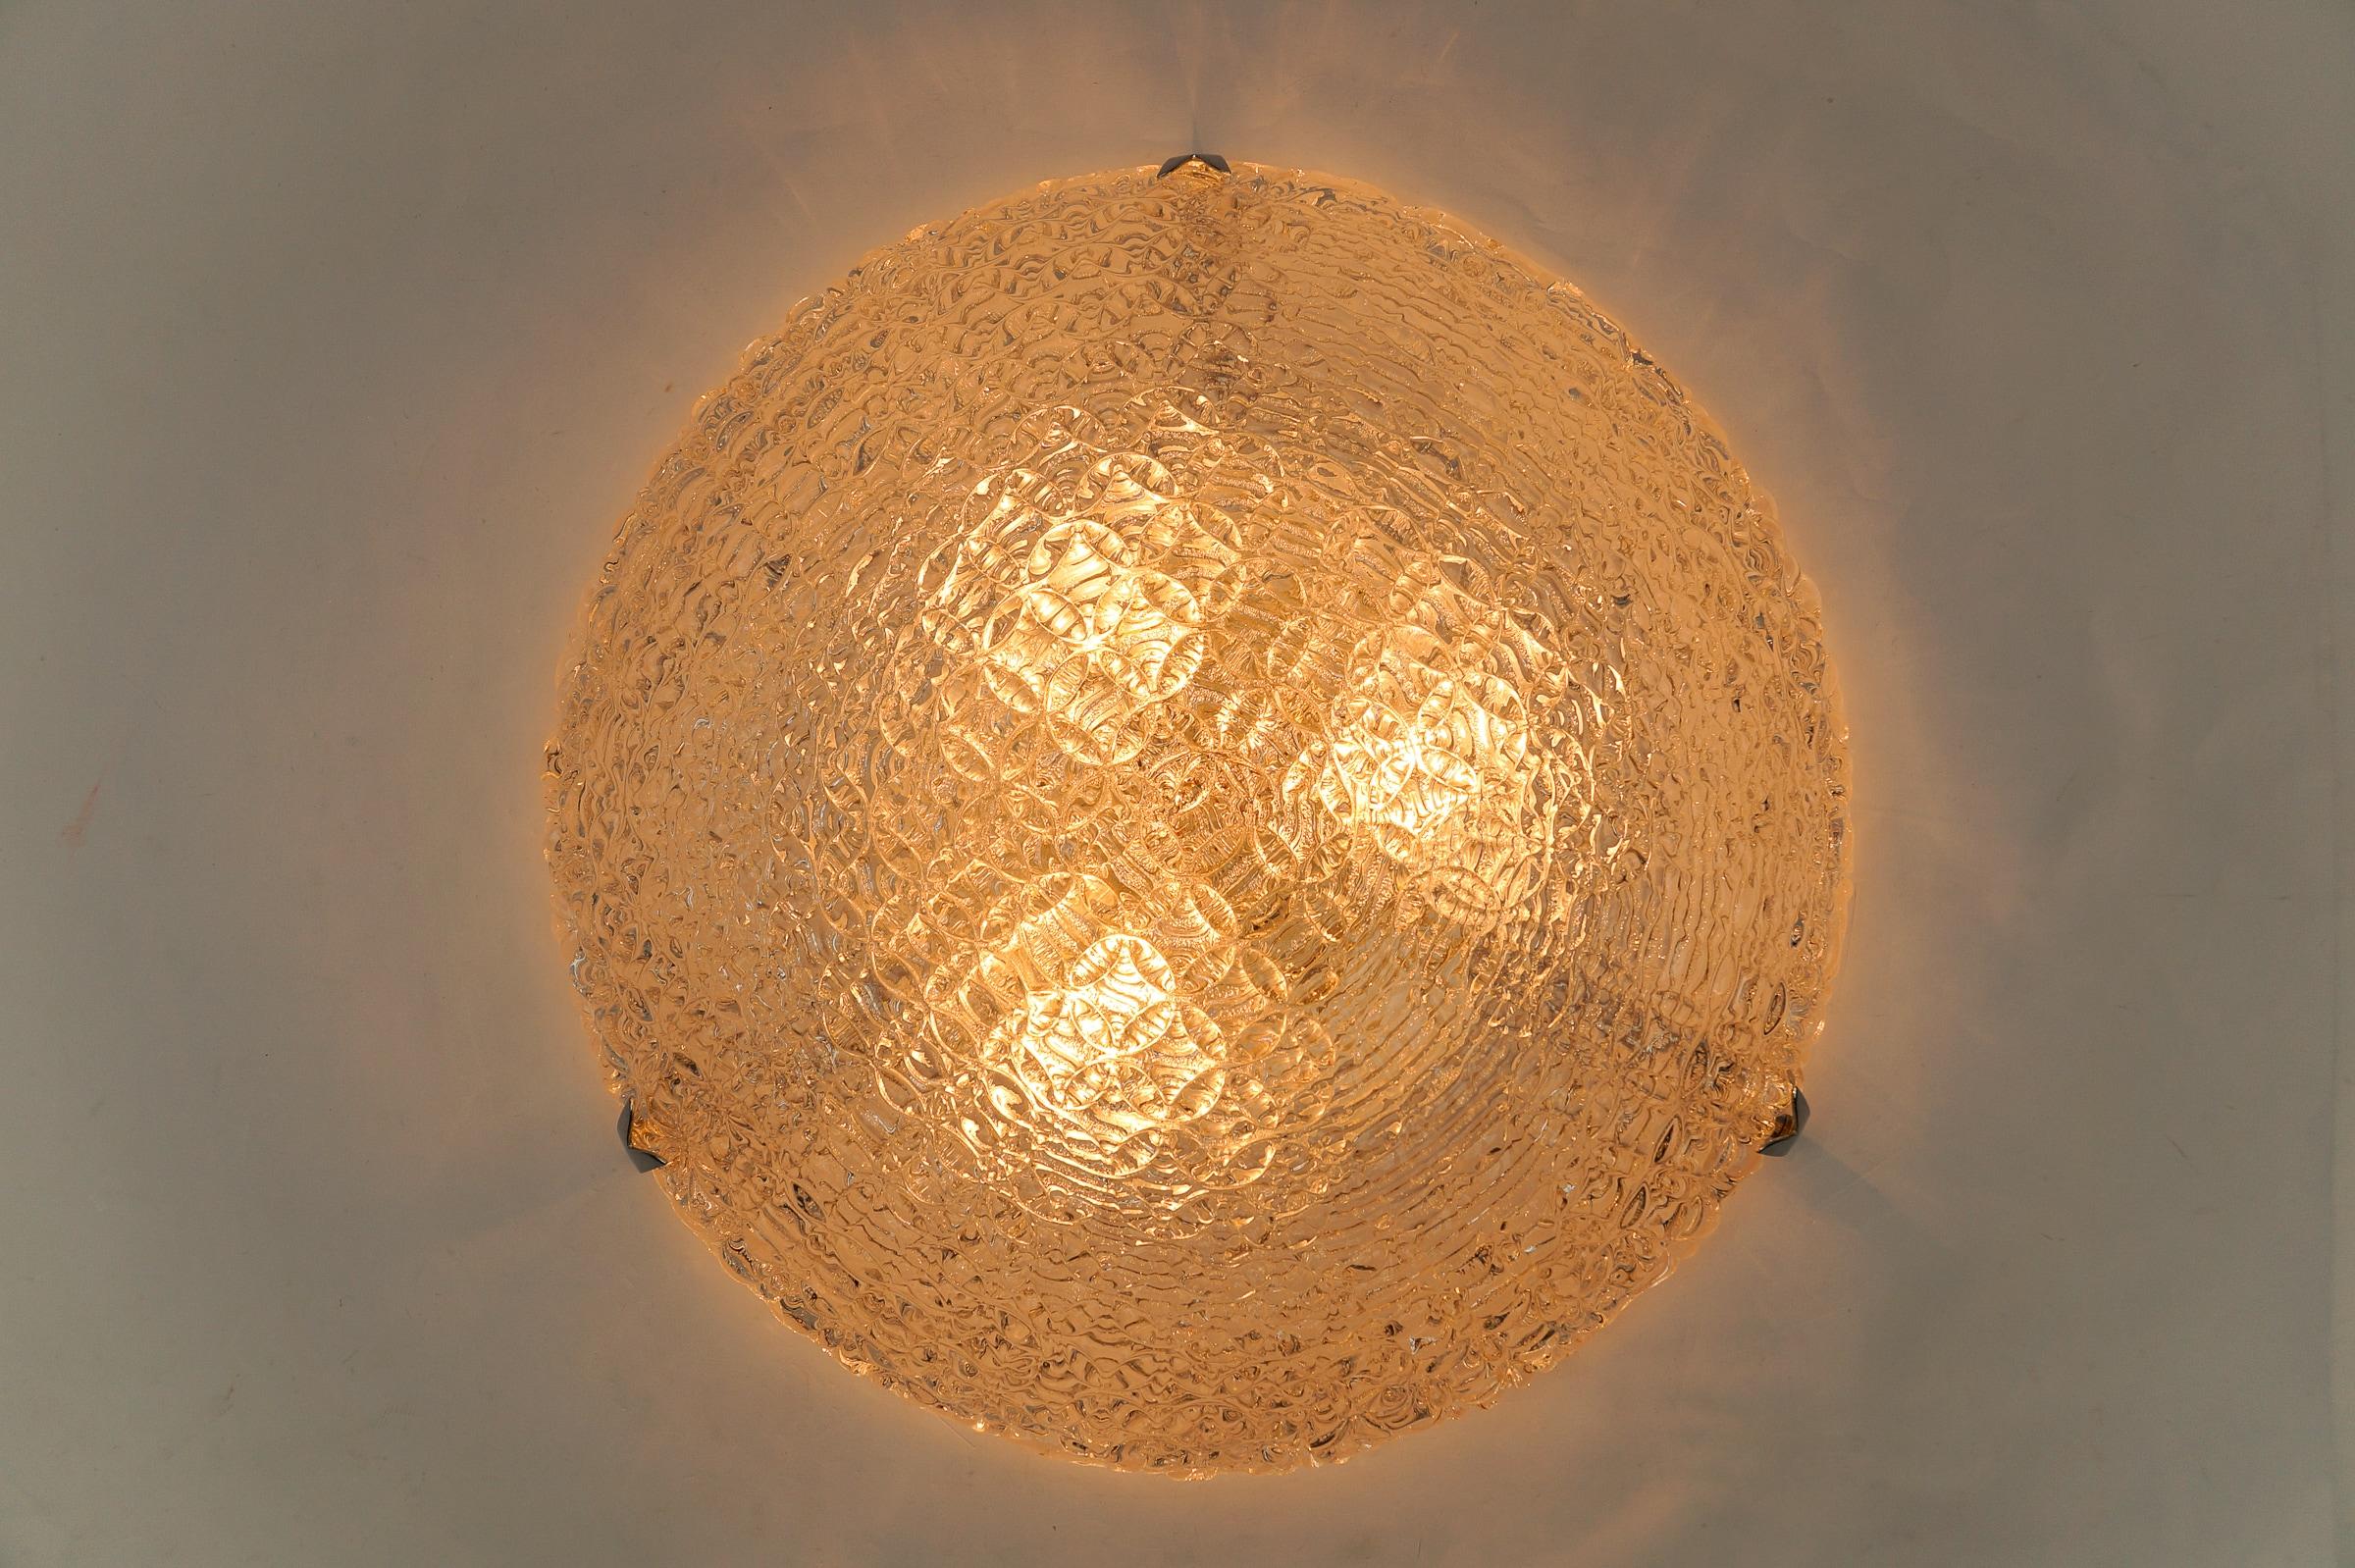 1. von 2 großen Glasringen Einbaubeleuchtung von Kaiser Leuchten, Deutschland, 1960er Jahre 

Dimension
Höhe: 11 cm (4,33 Zoll)
Dameter: 20,47 Zoll (52 cm)

Jede Lampe kommt mit 3 x E27 / E26 Edison Schraube passen Glühbirnenfassung, ist verkabelt